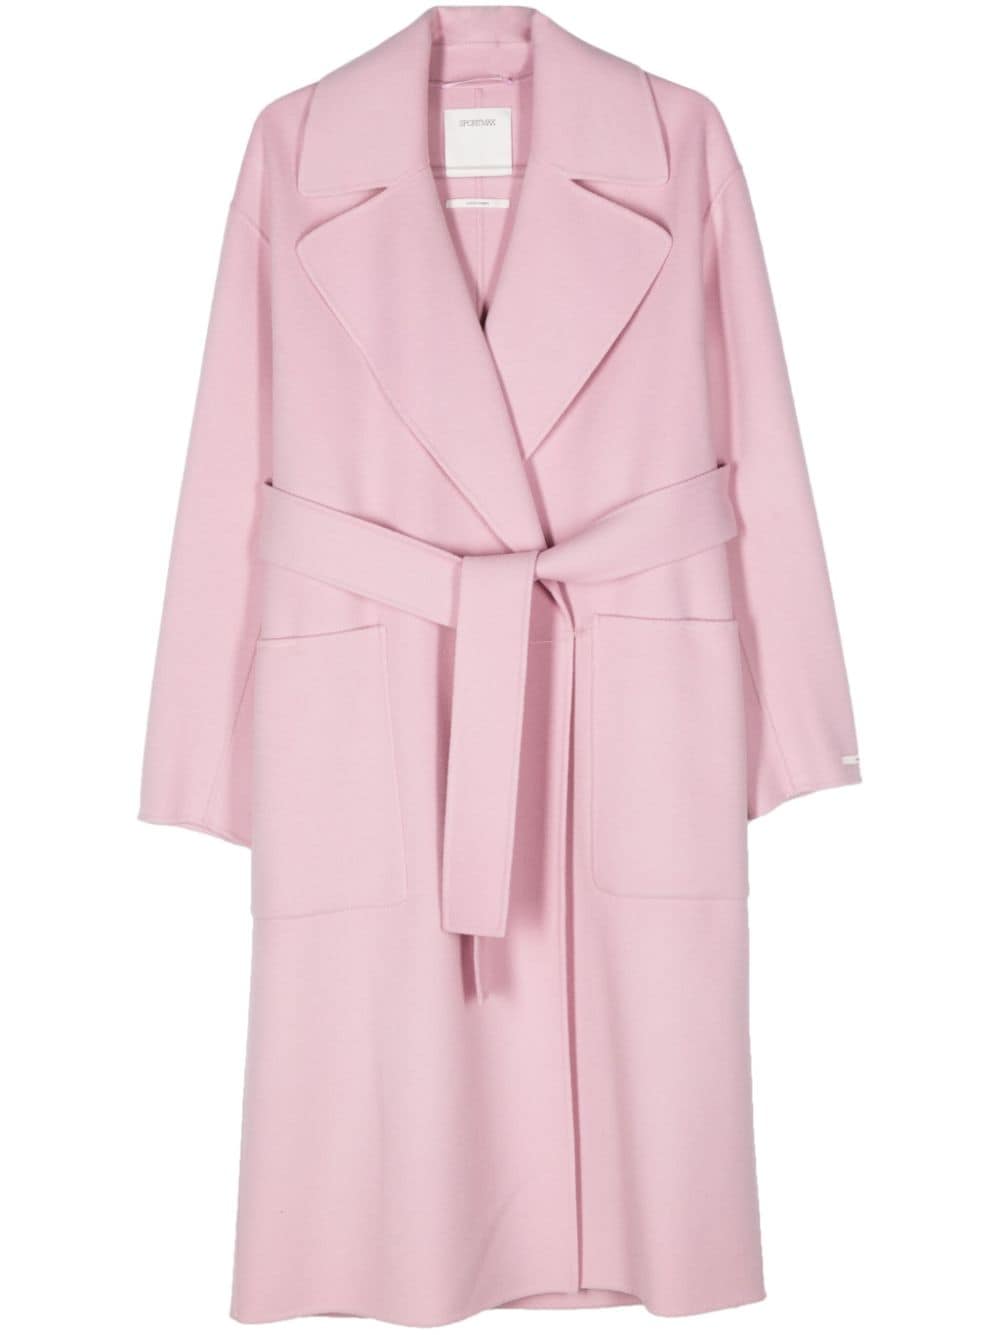 Cappotto rosa in lana vergine